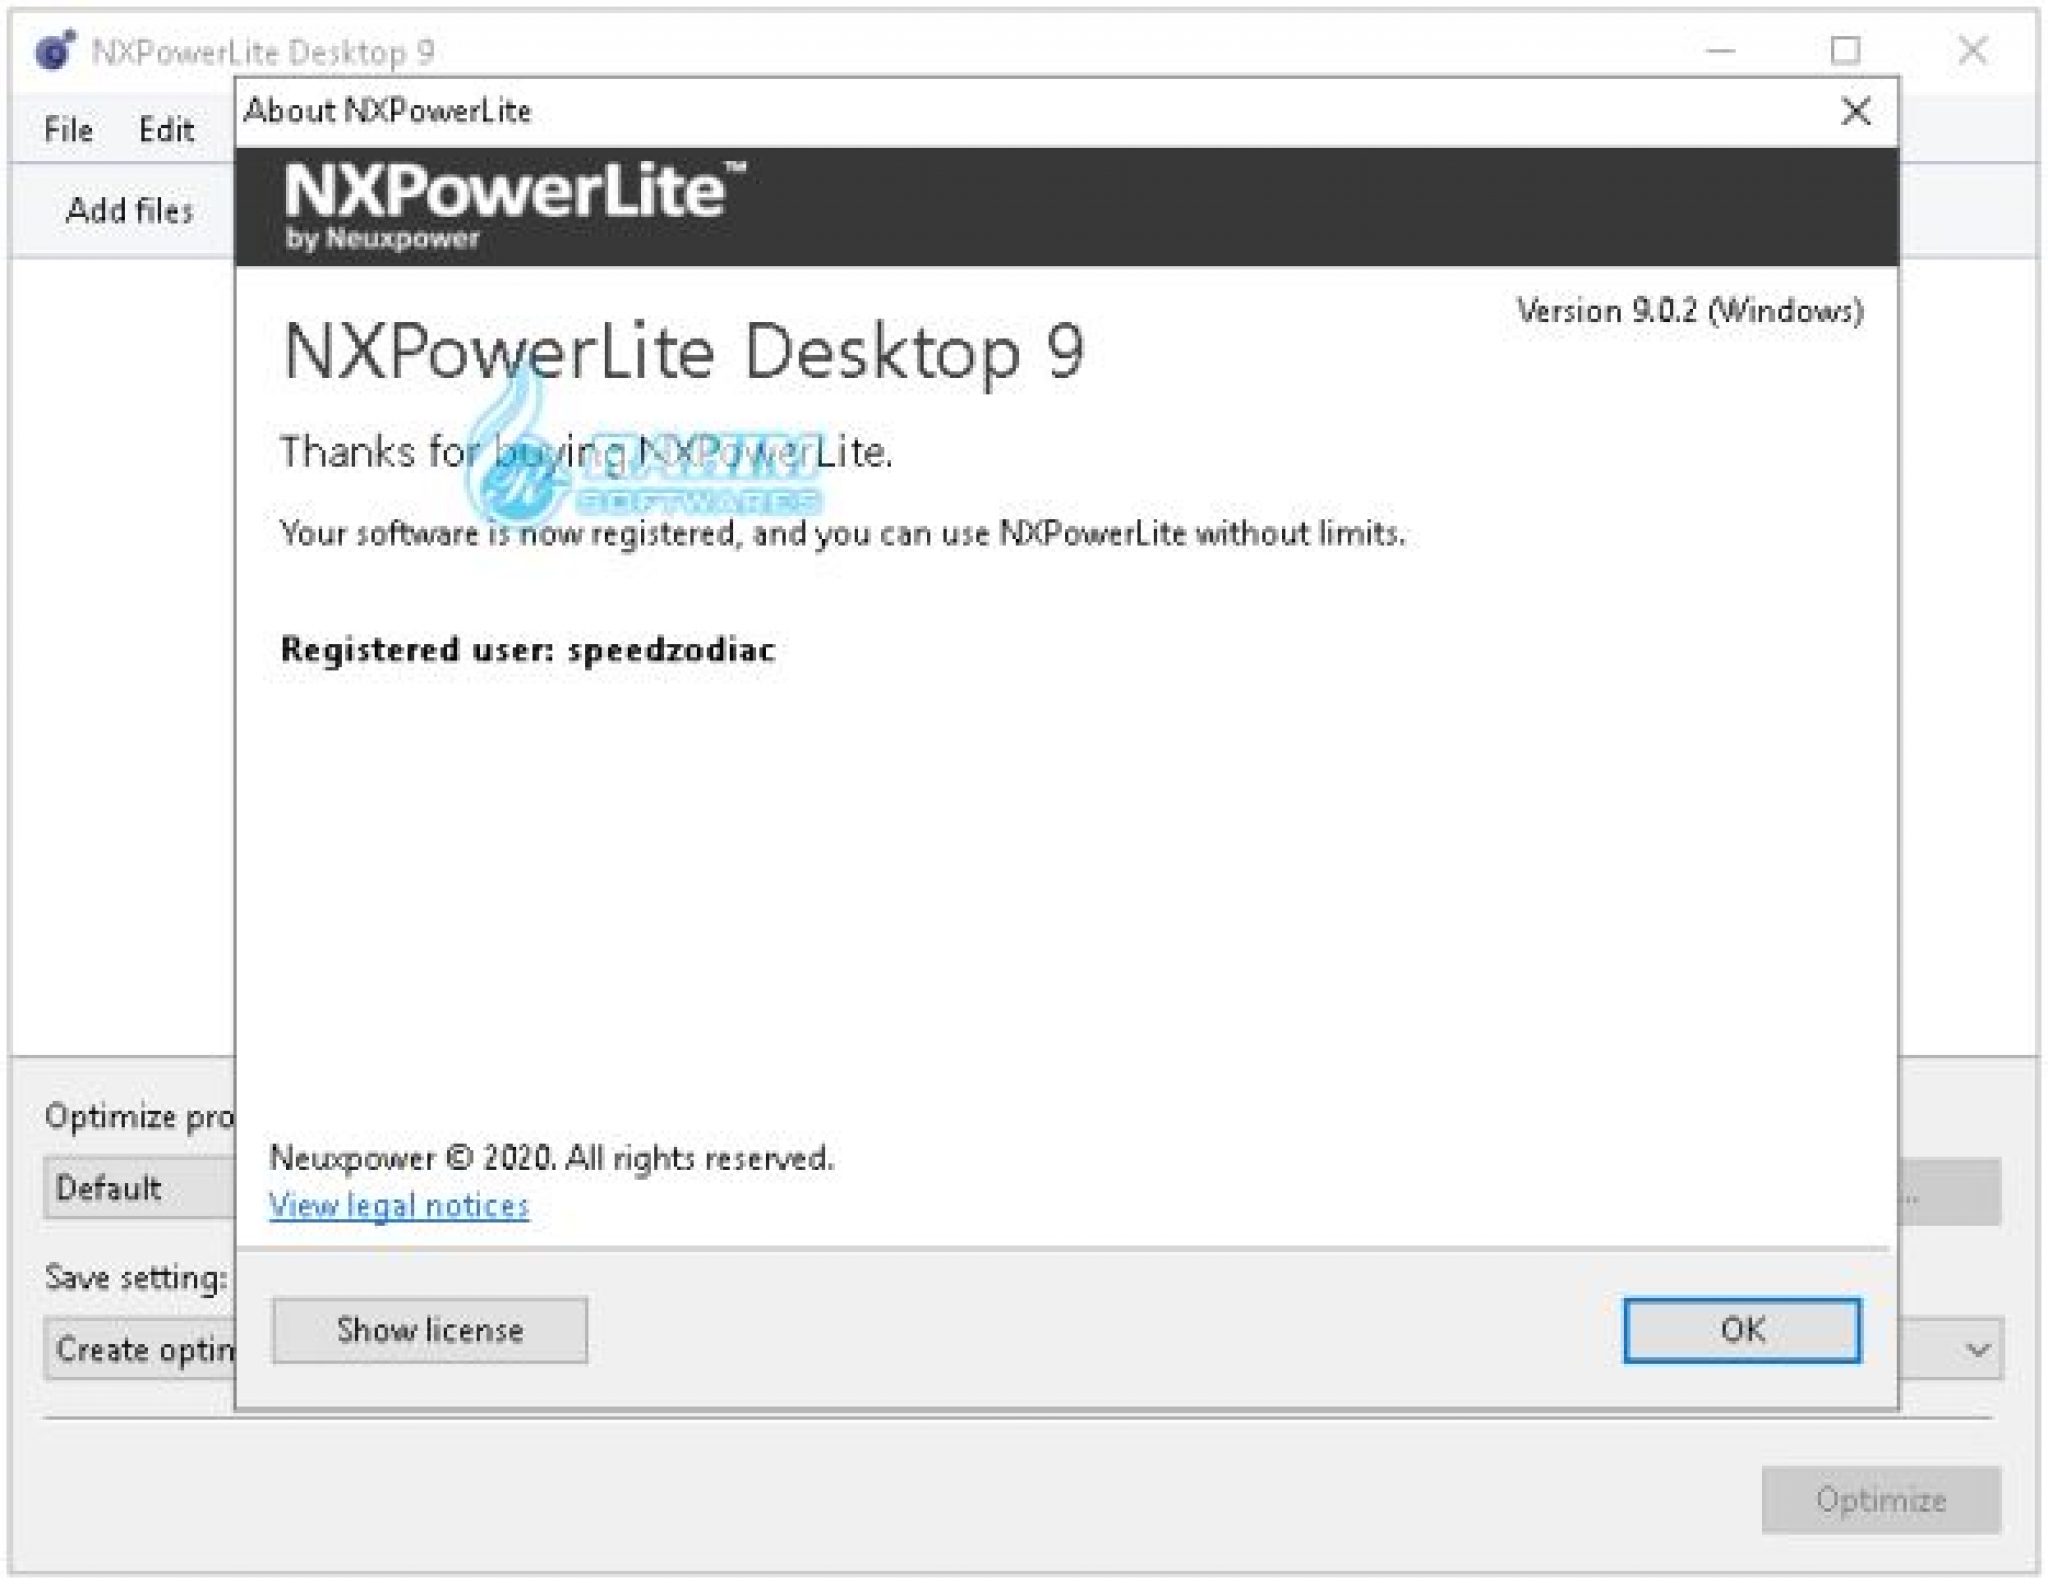 instal the new version for windows NXPowerLite Desktop 10.0.1